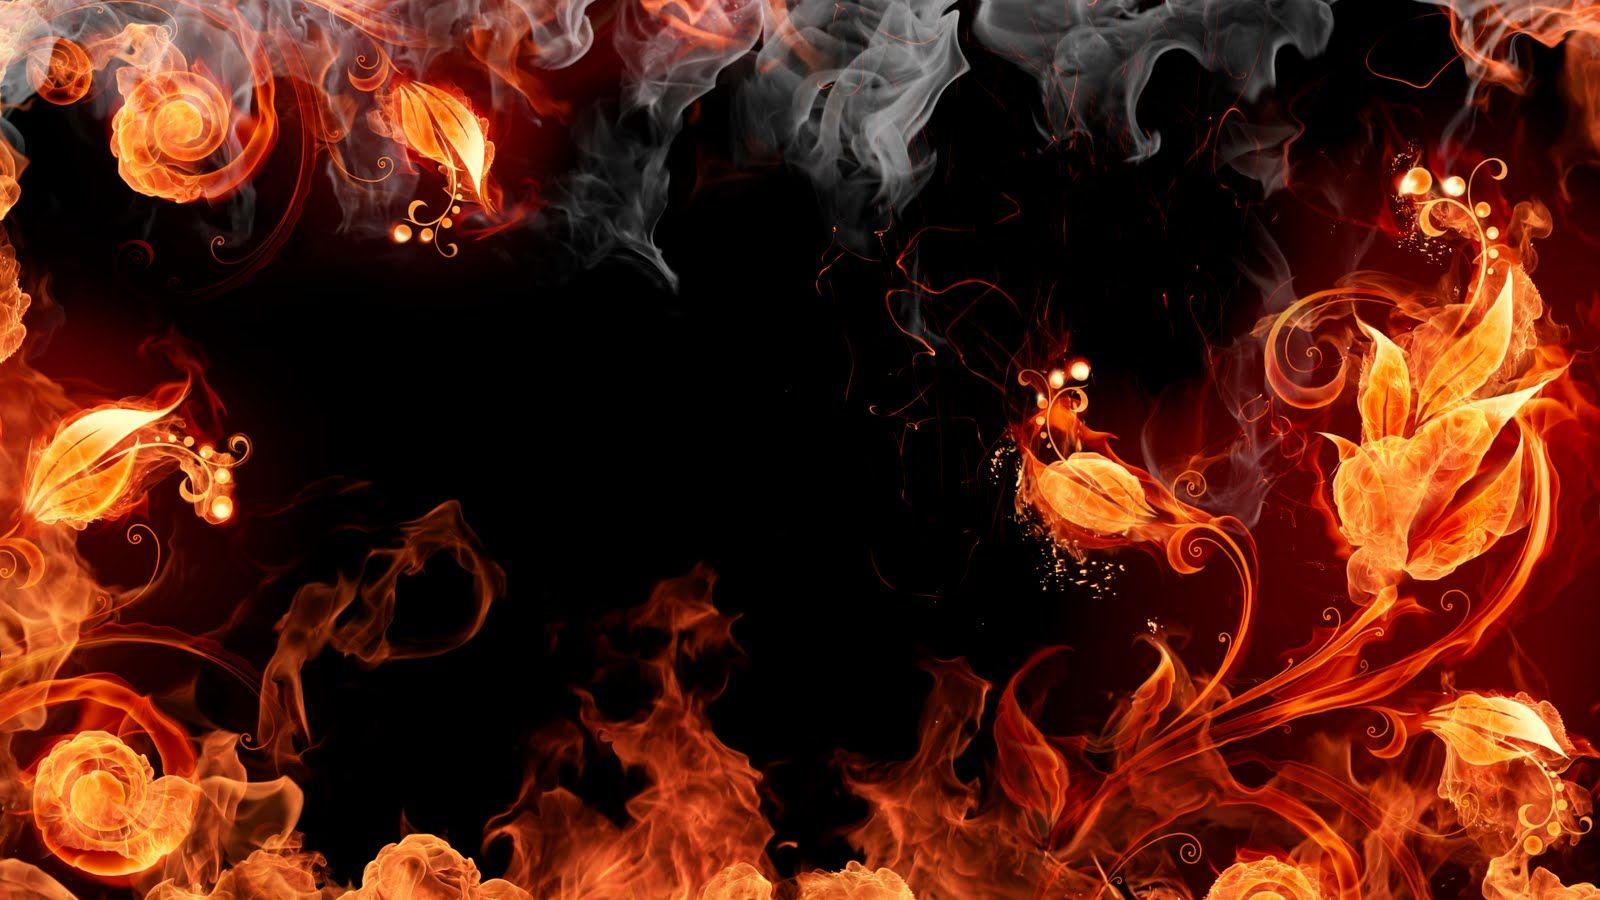 Fire Element. Smoke wallpaper, Fire art, Fire flower